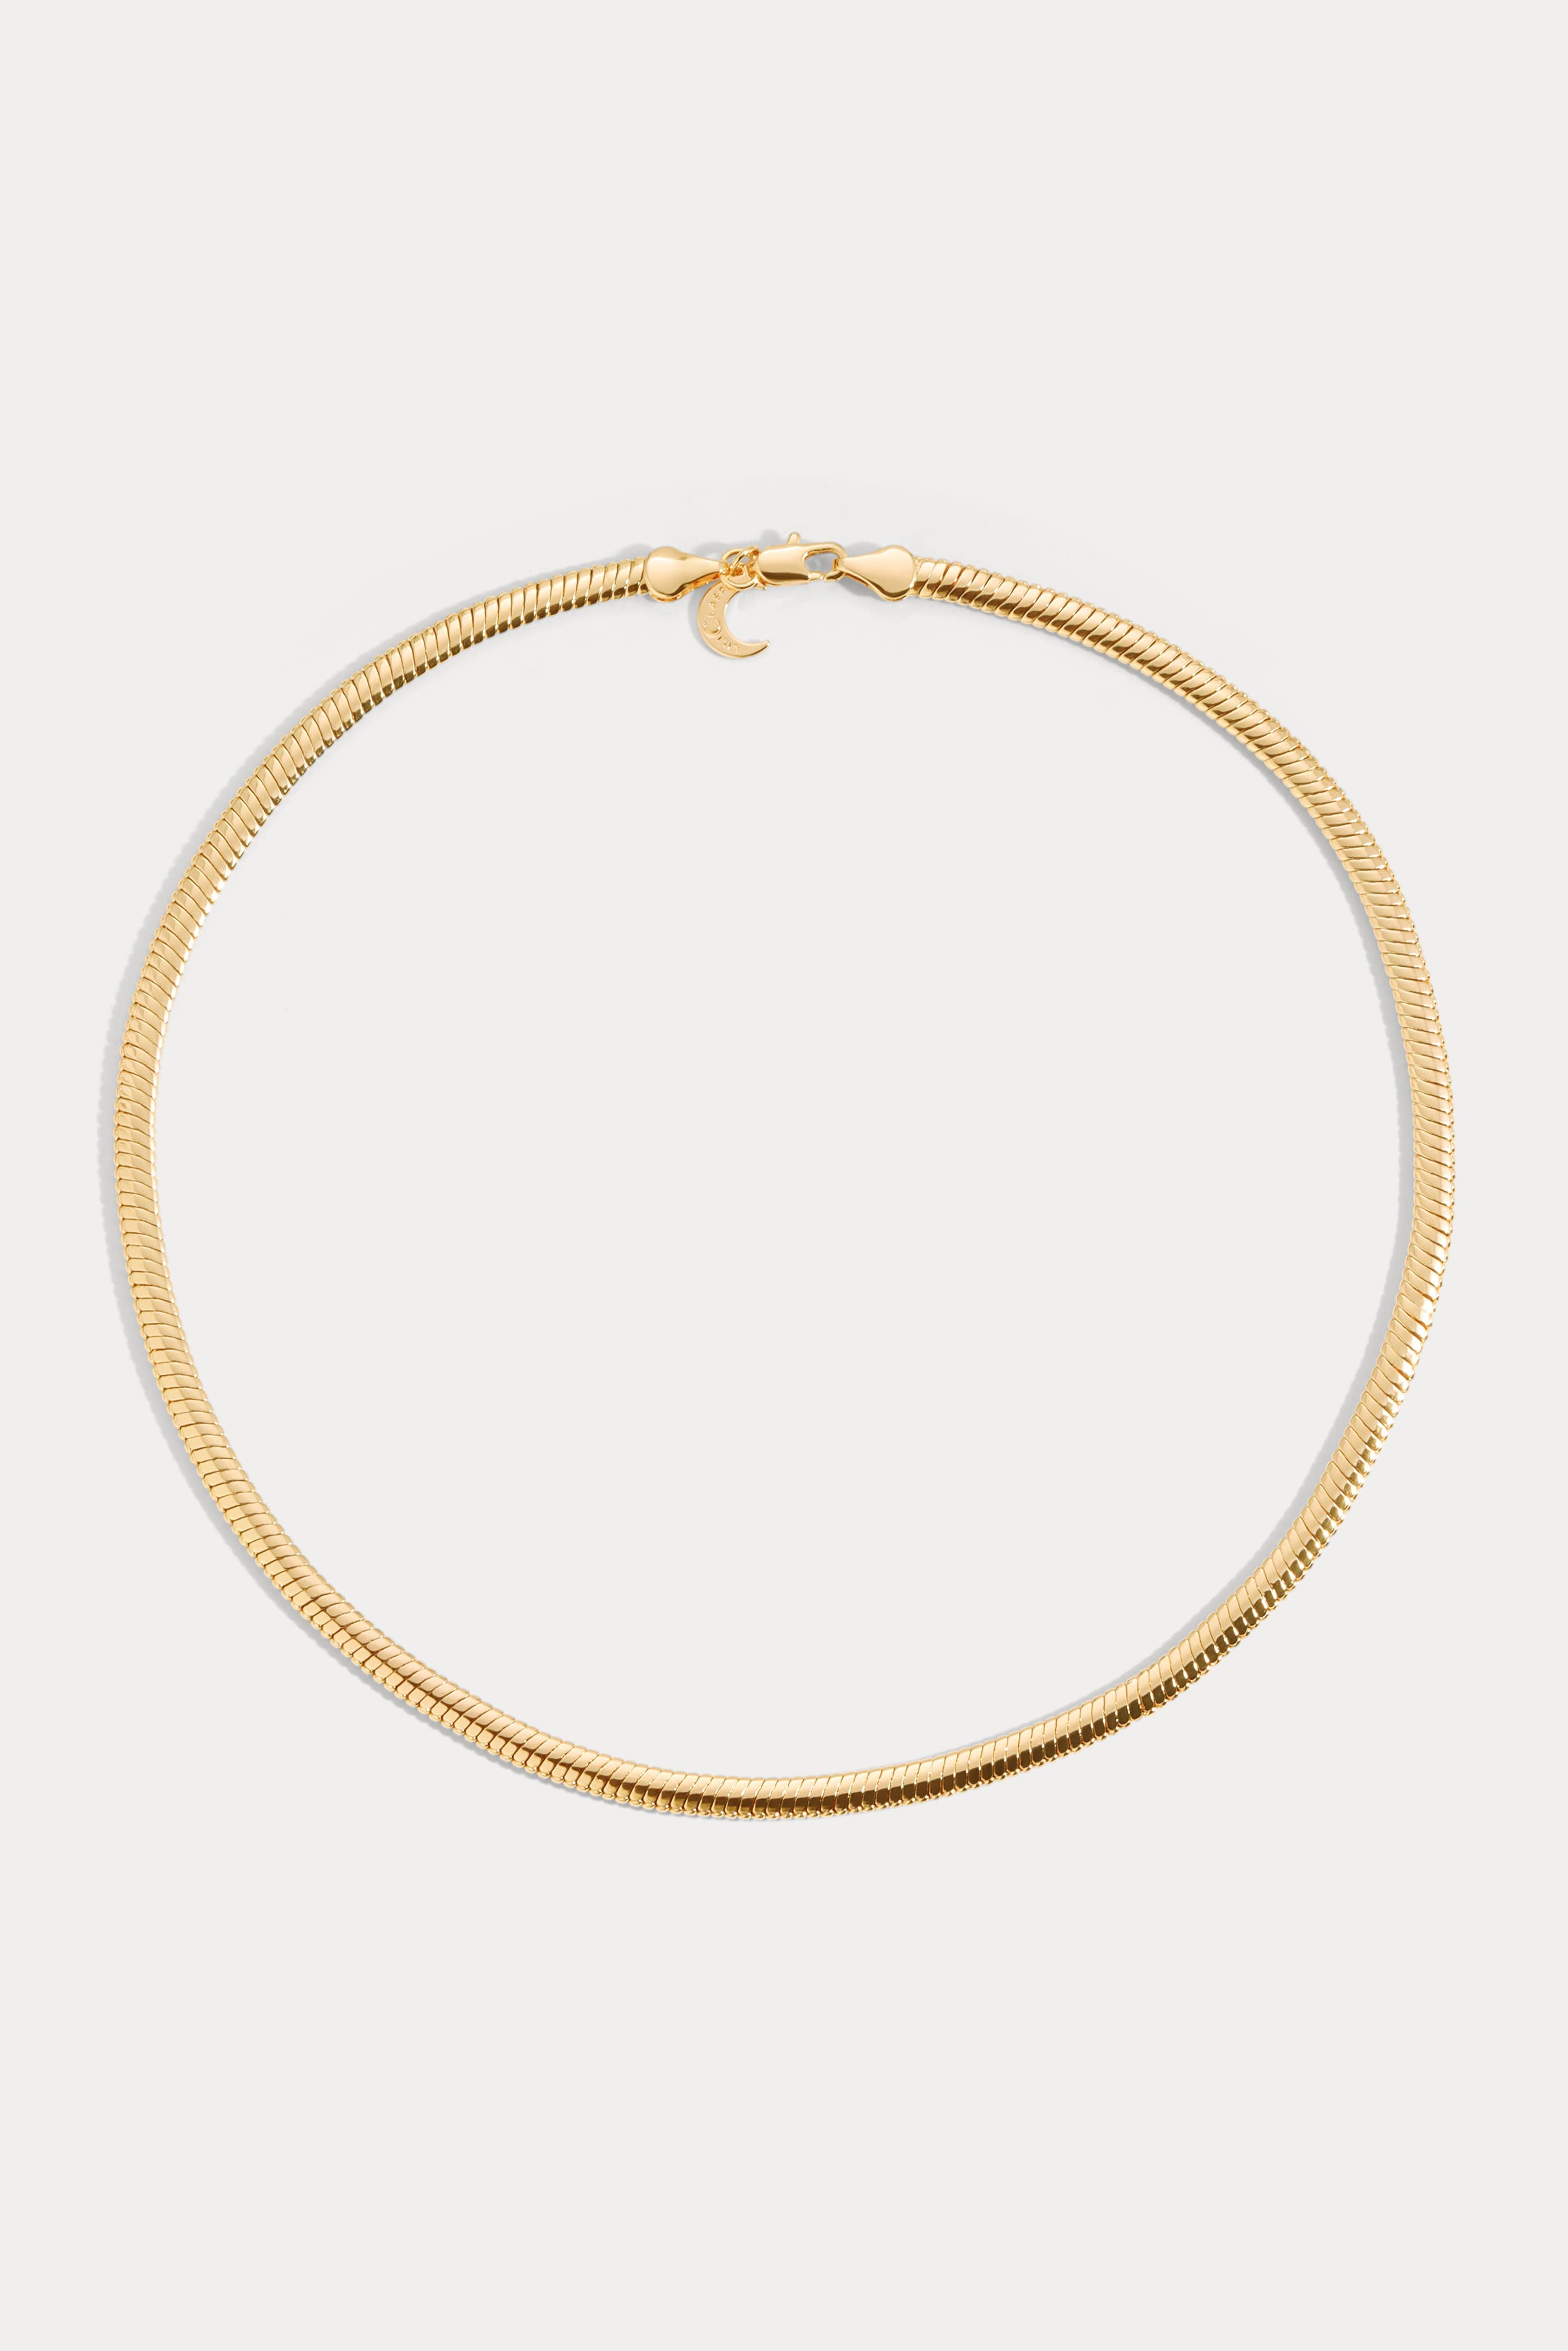 Lili Claspe Gold Small Raissa Chain Necklace